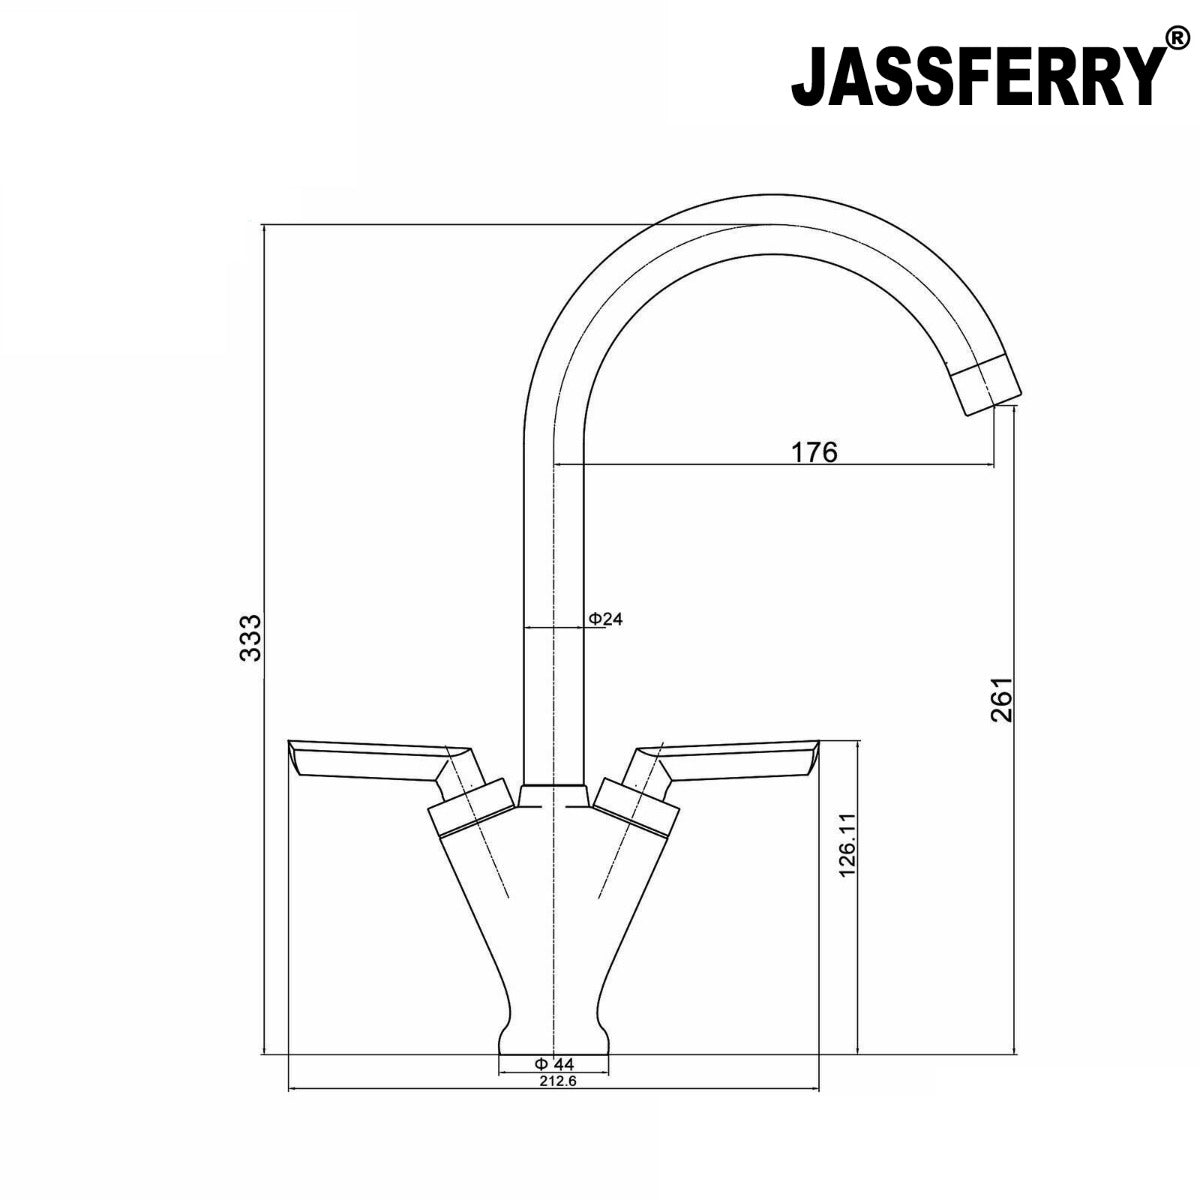 JassferryJASSFERRY Brass Mono Kitchen Sink Tap Modern Mixer Twin Lever Swivel SpoutKitchen taps